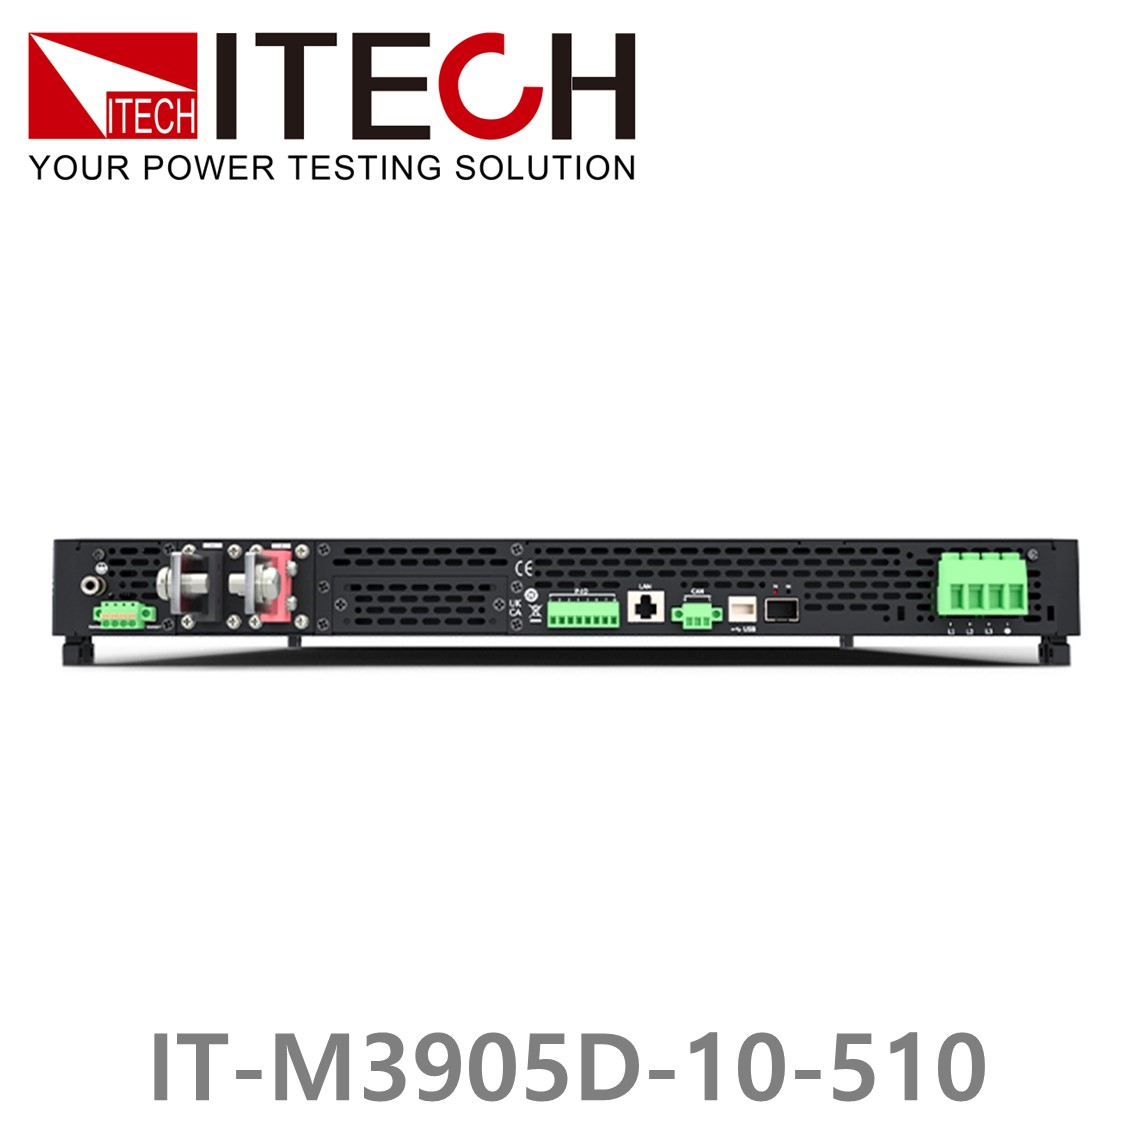 [ ITECH ] IT-M3905D-10-510 양방향 프로그래머블 DC전원공급기, DC파워서플라이